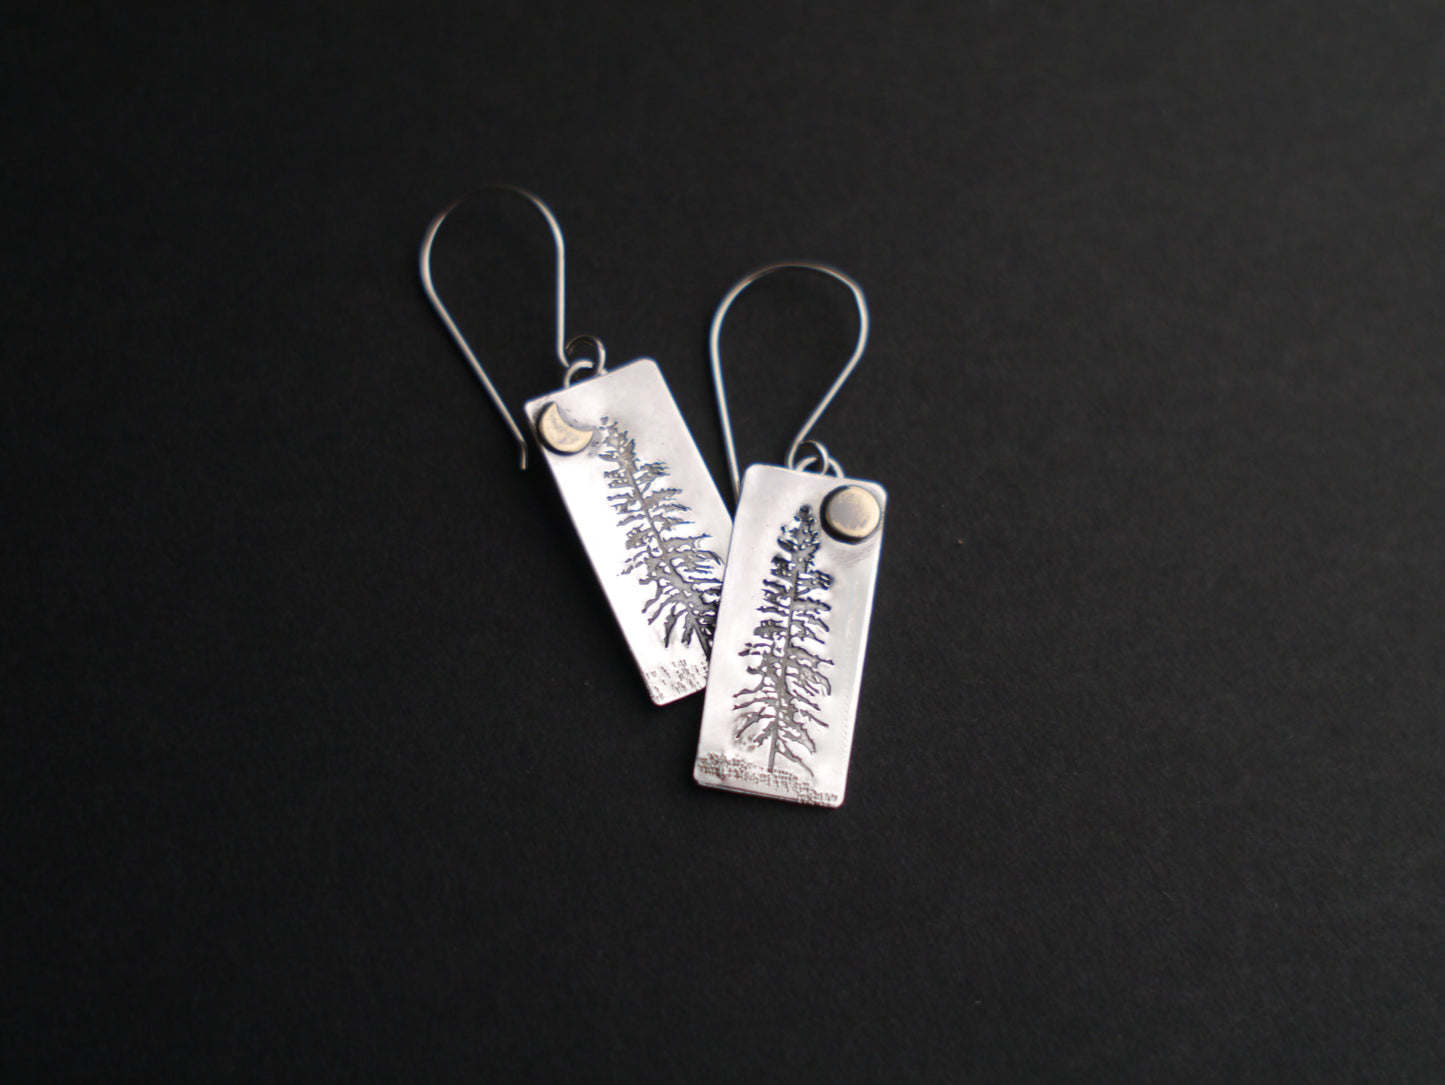 Tamarack Pine Earrings in Recycled Sterling Silver